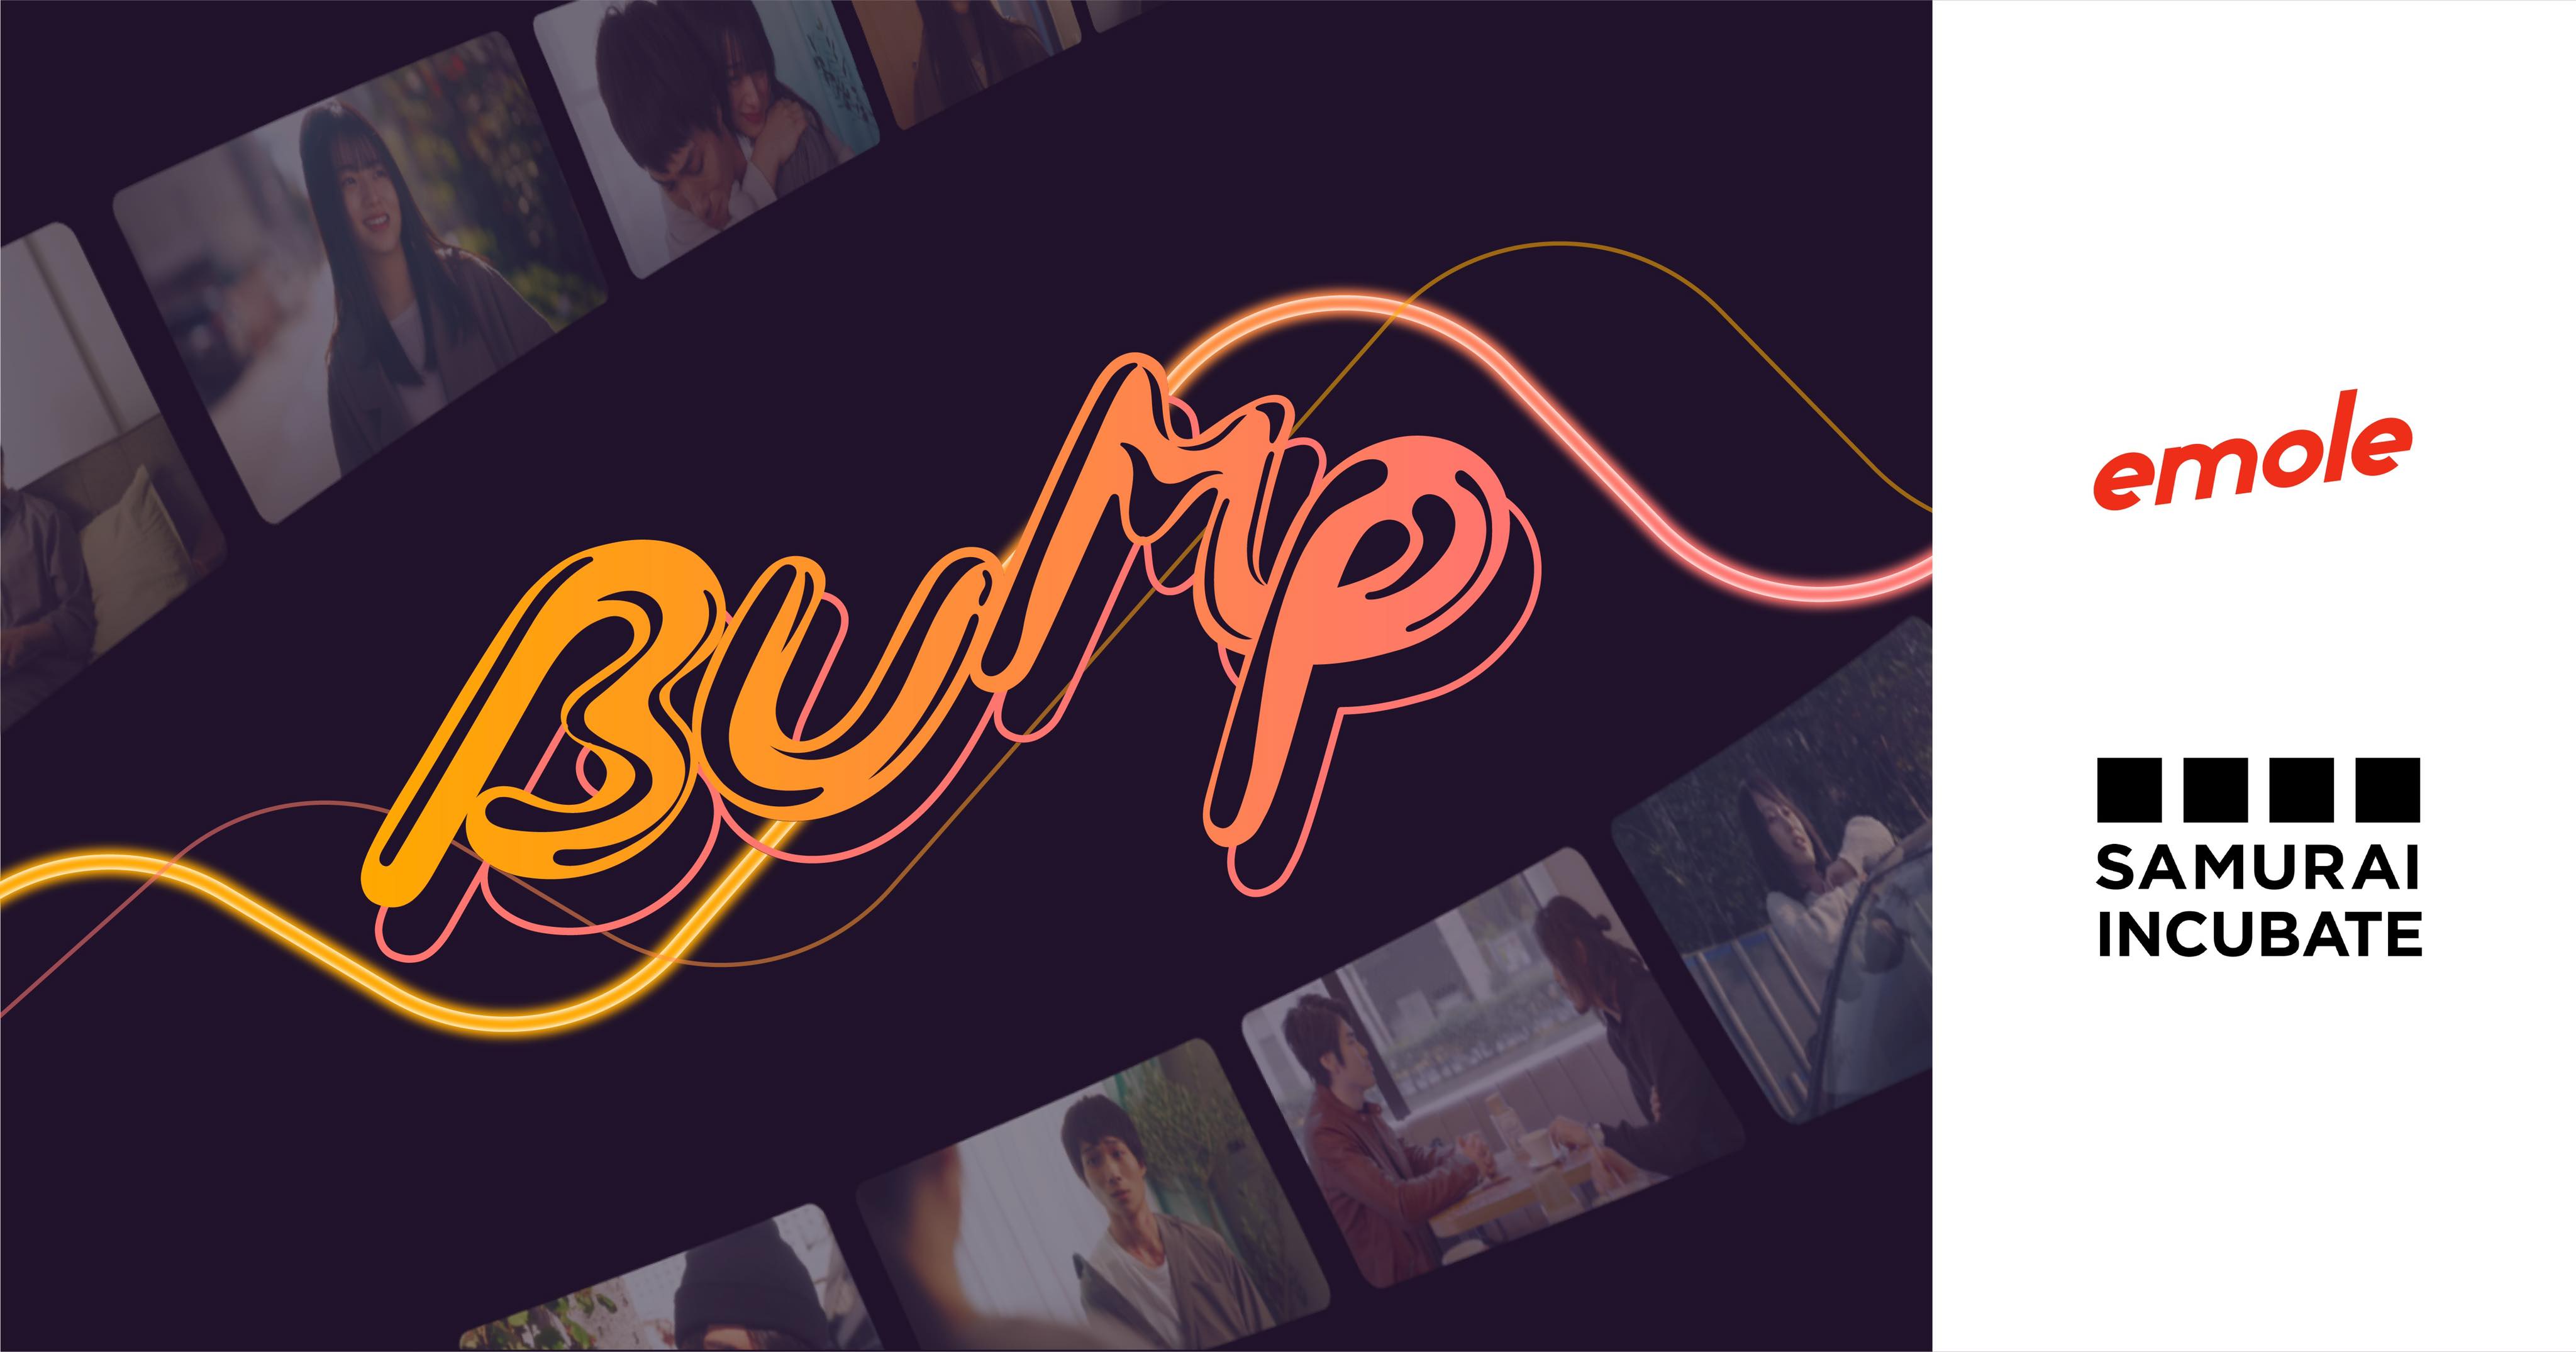 Z世代向け超短尺スマホドラマ配信サービス「BUMP」を提供スタート予定の「emole」へ出資決定